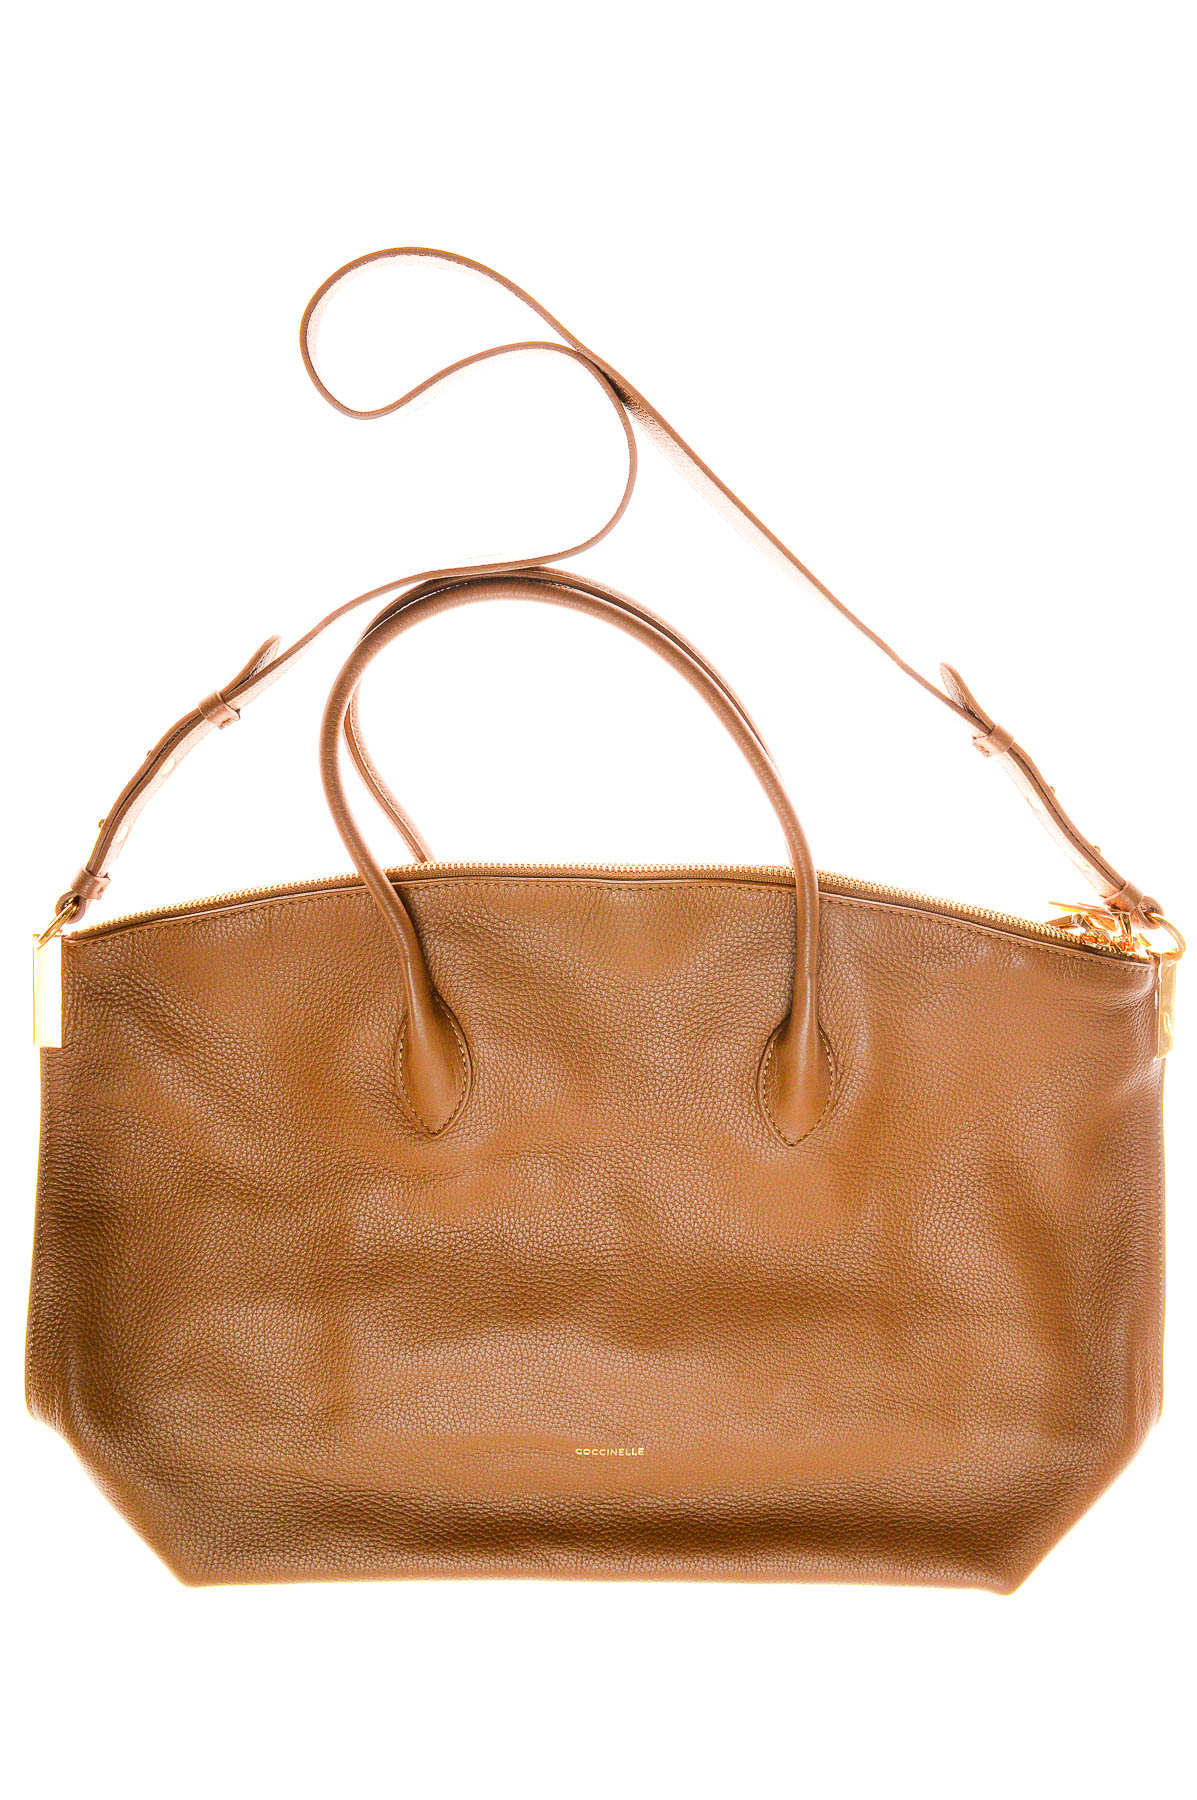 Women's bag - Coccinelle - 0